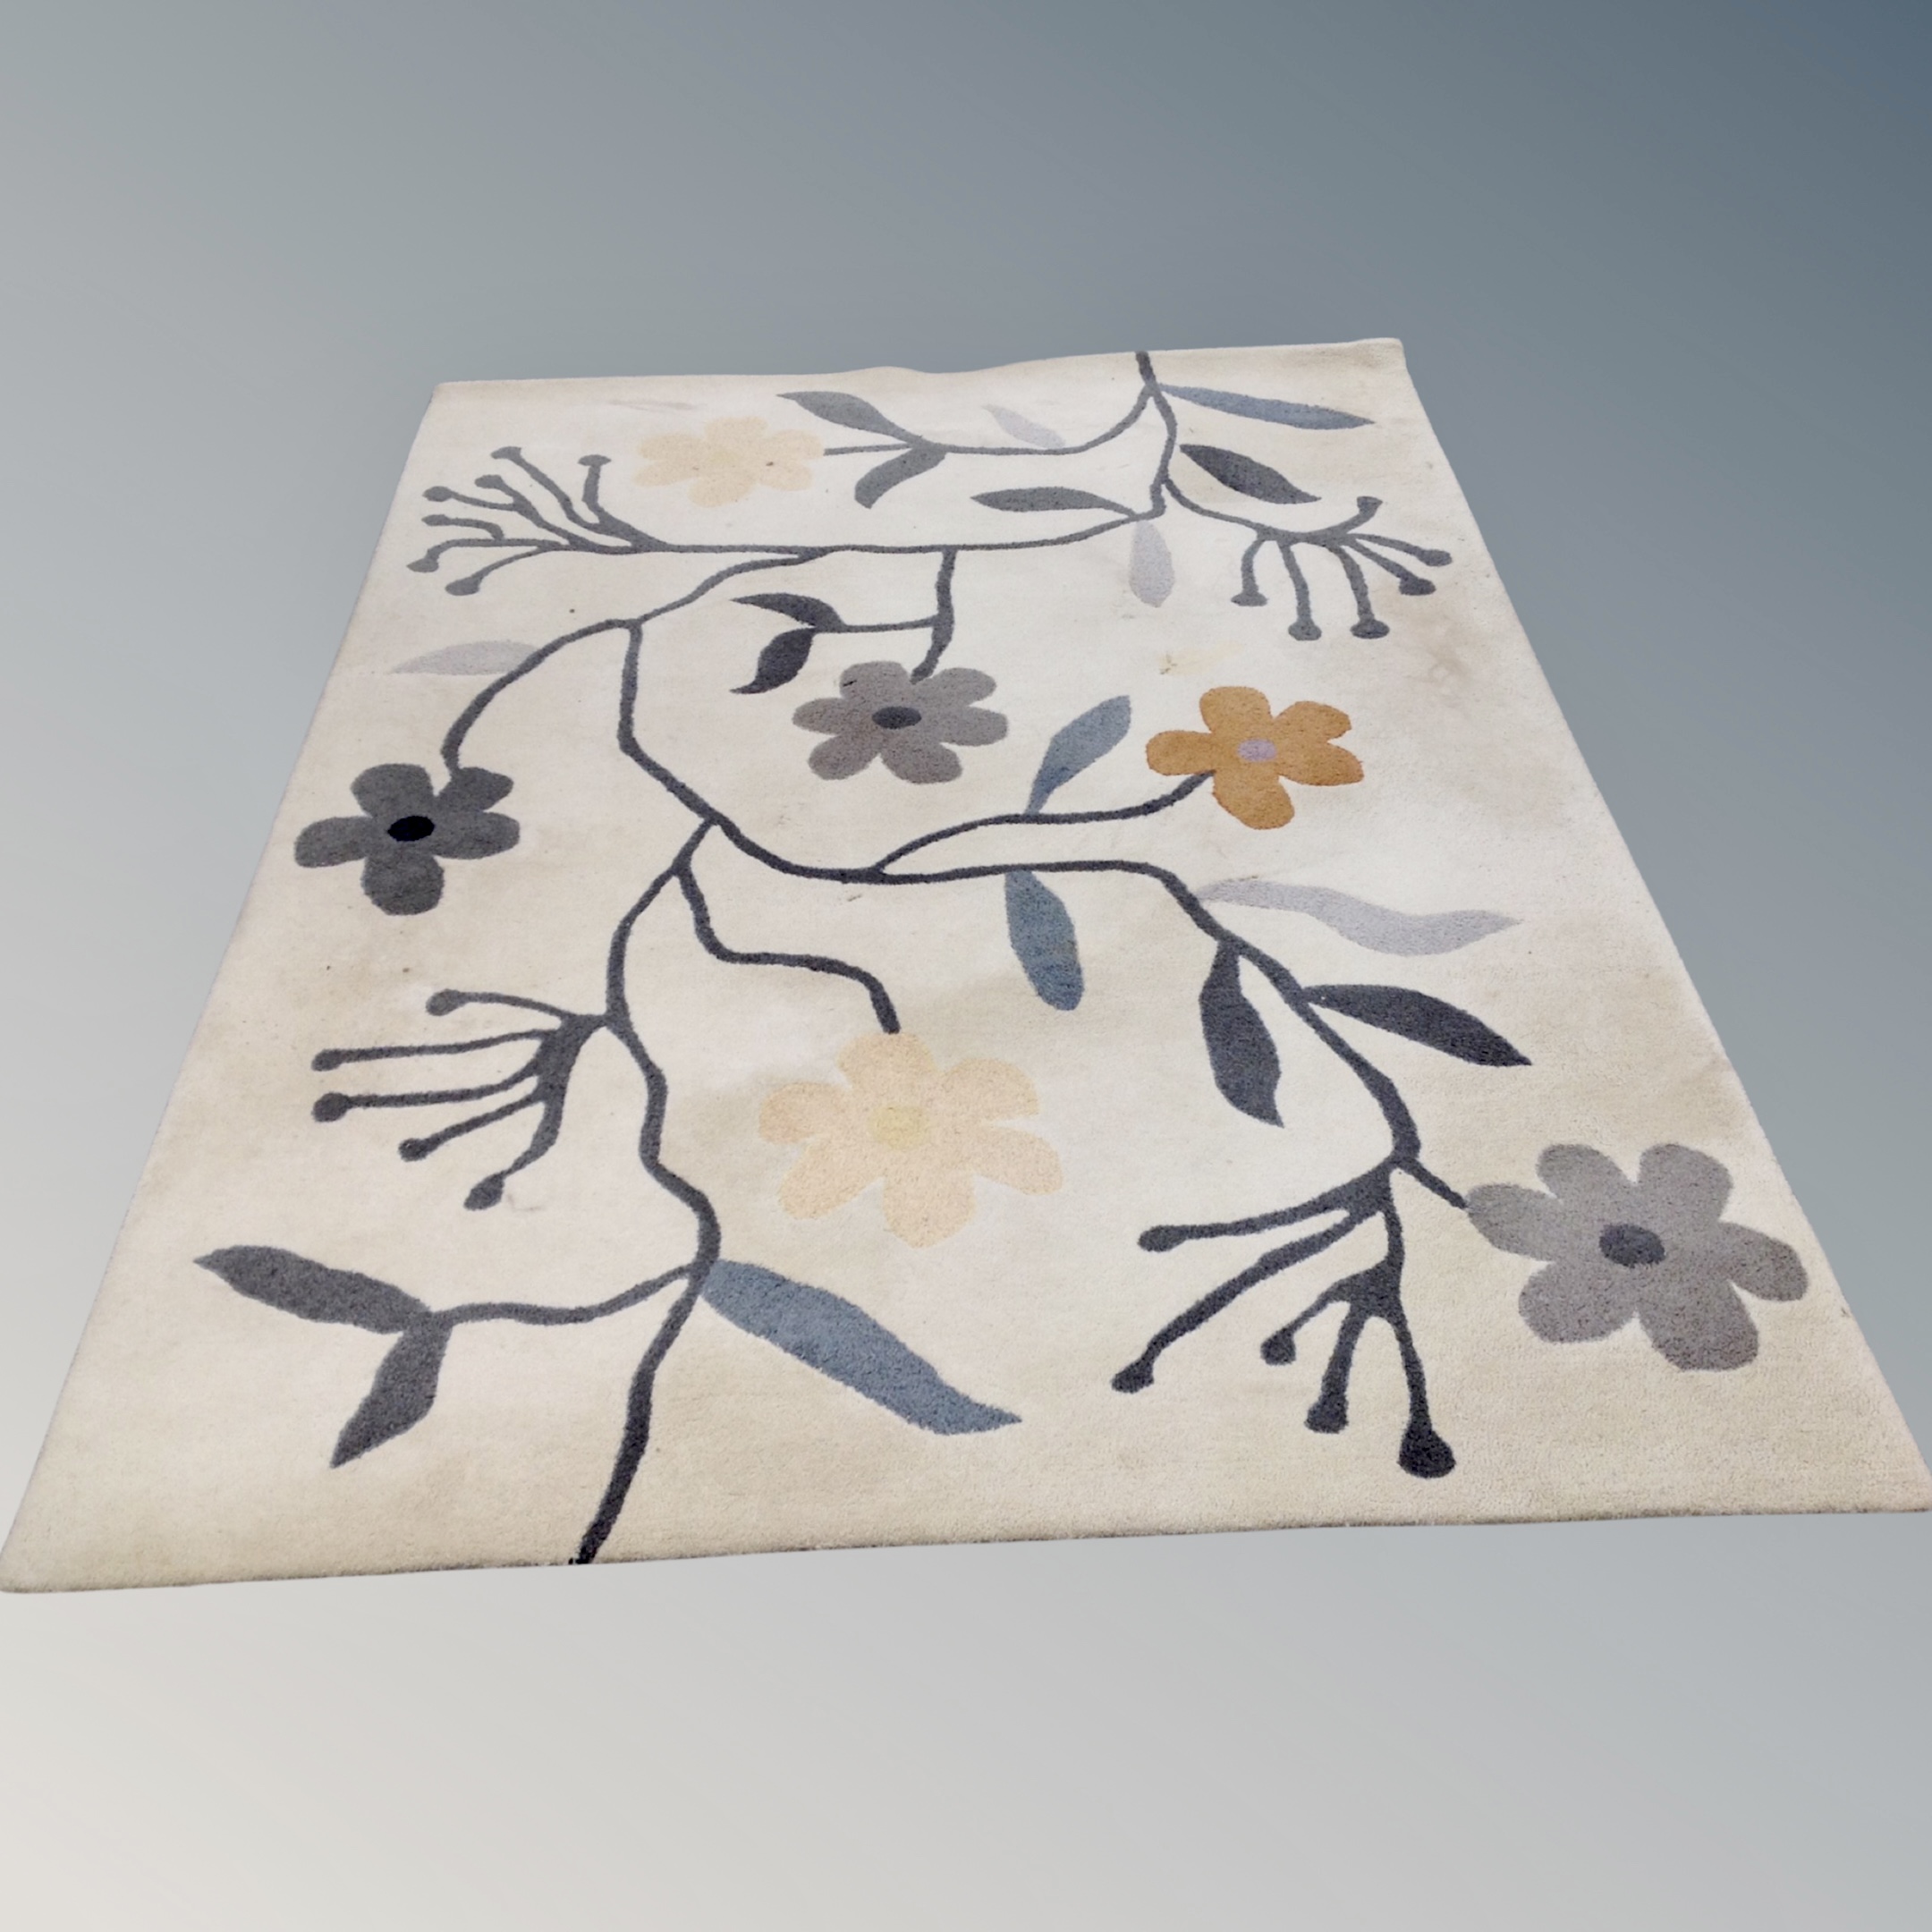 A Brink and Campman Estella bloom 200 cm x 280 cm contemporary rug